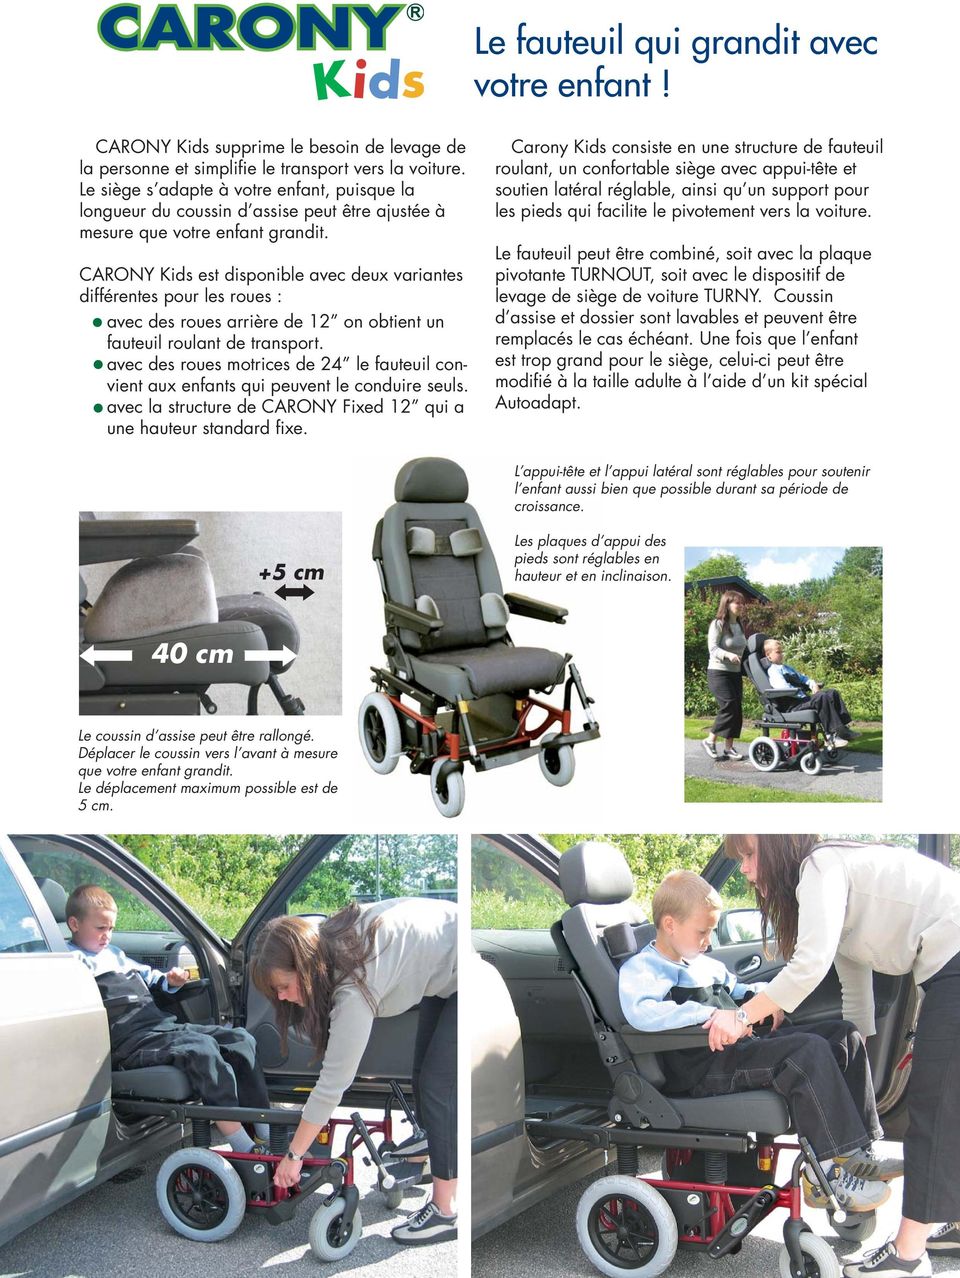 CARONY Kids est disponible avec deux variantes différentes pour les roues : avec des roues arrière de 12 on obtient un fauteuil roulant de transport.